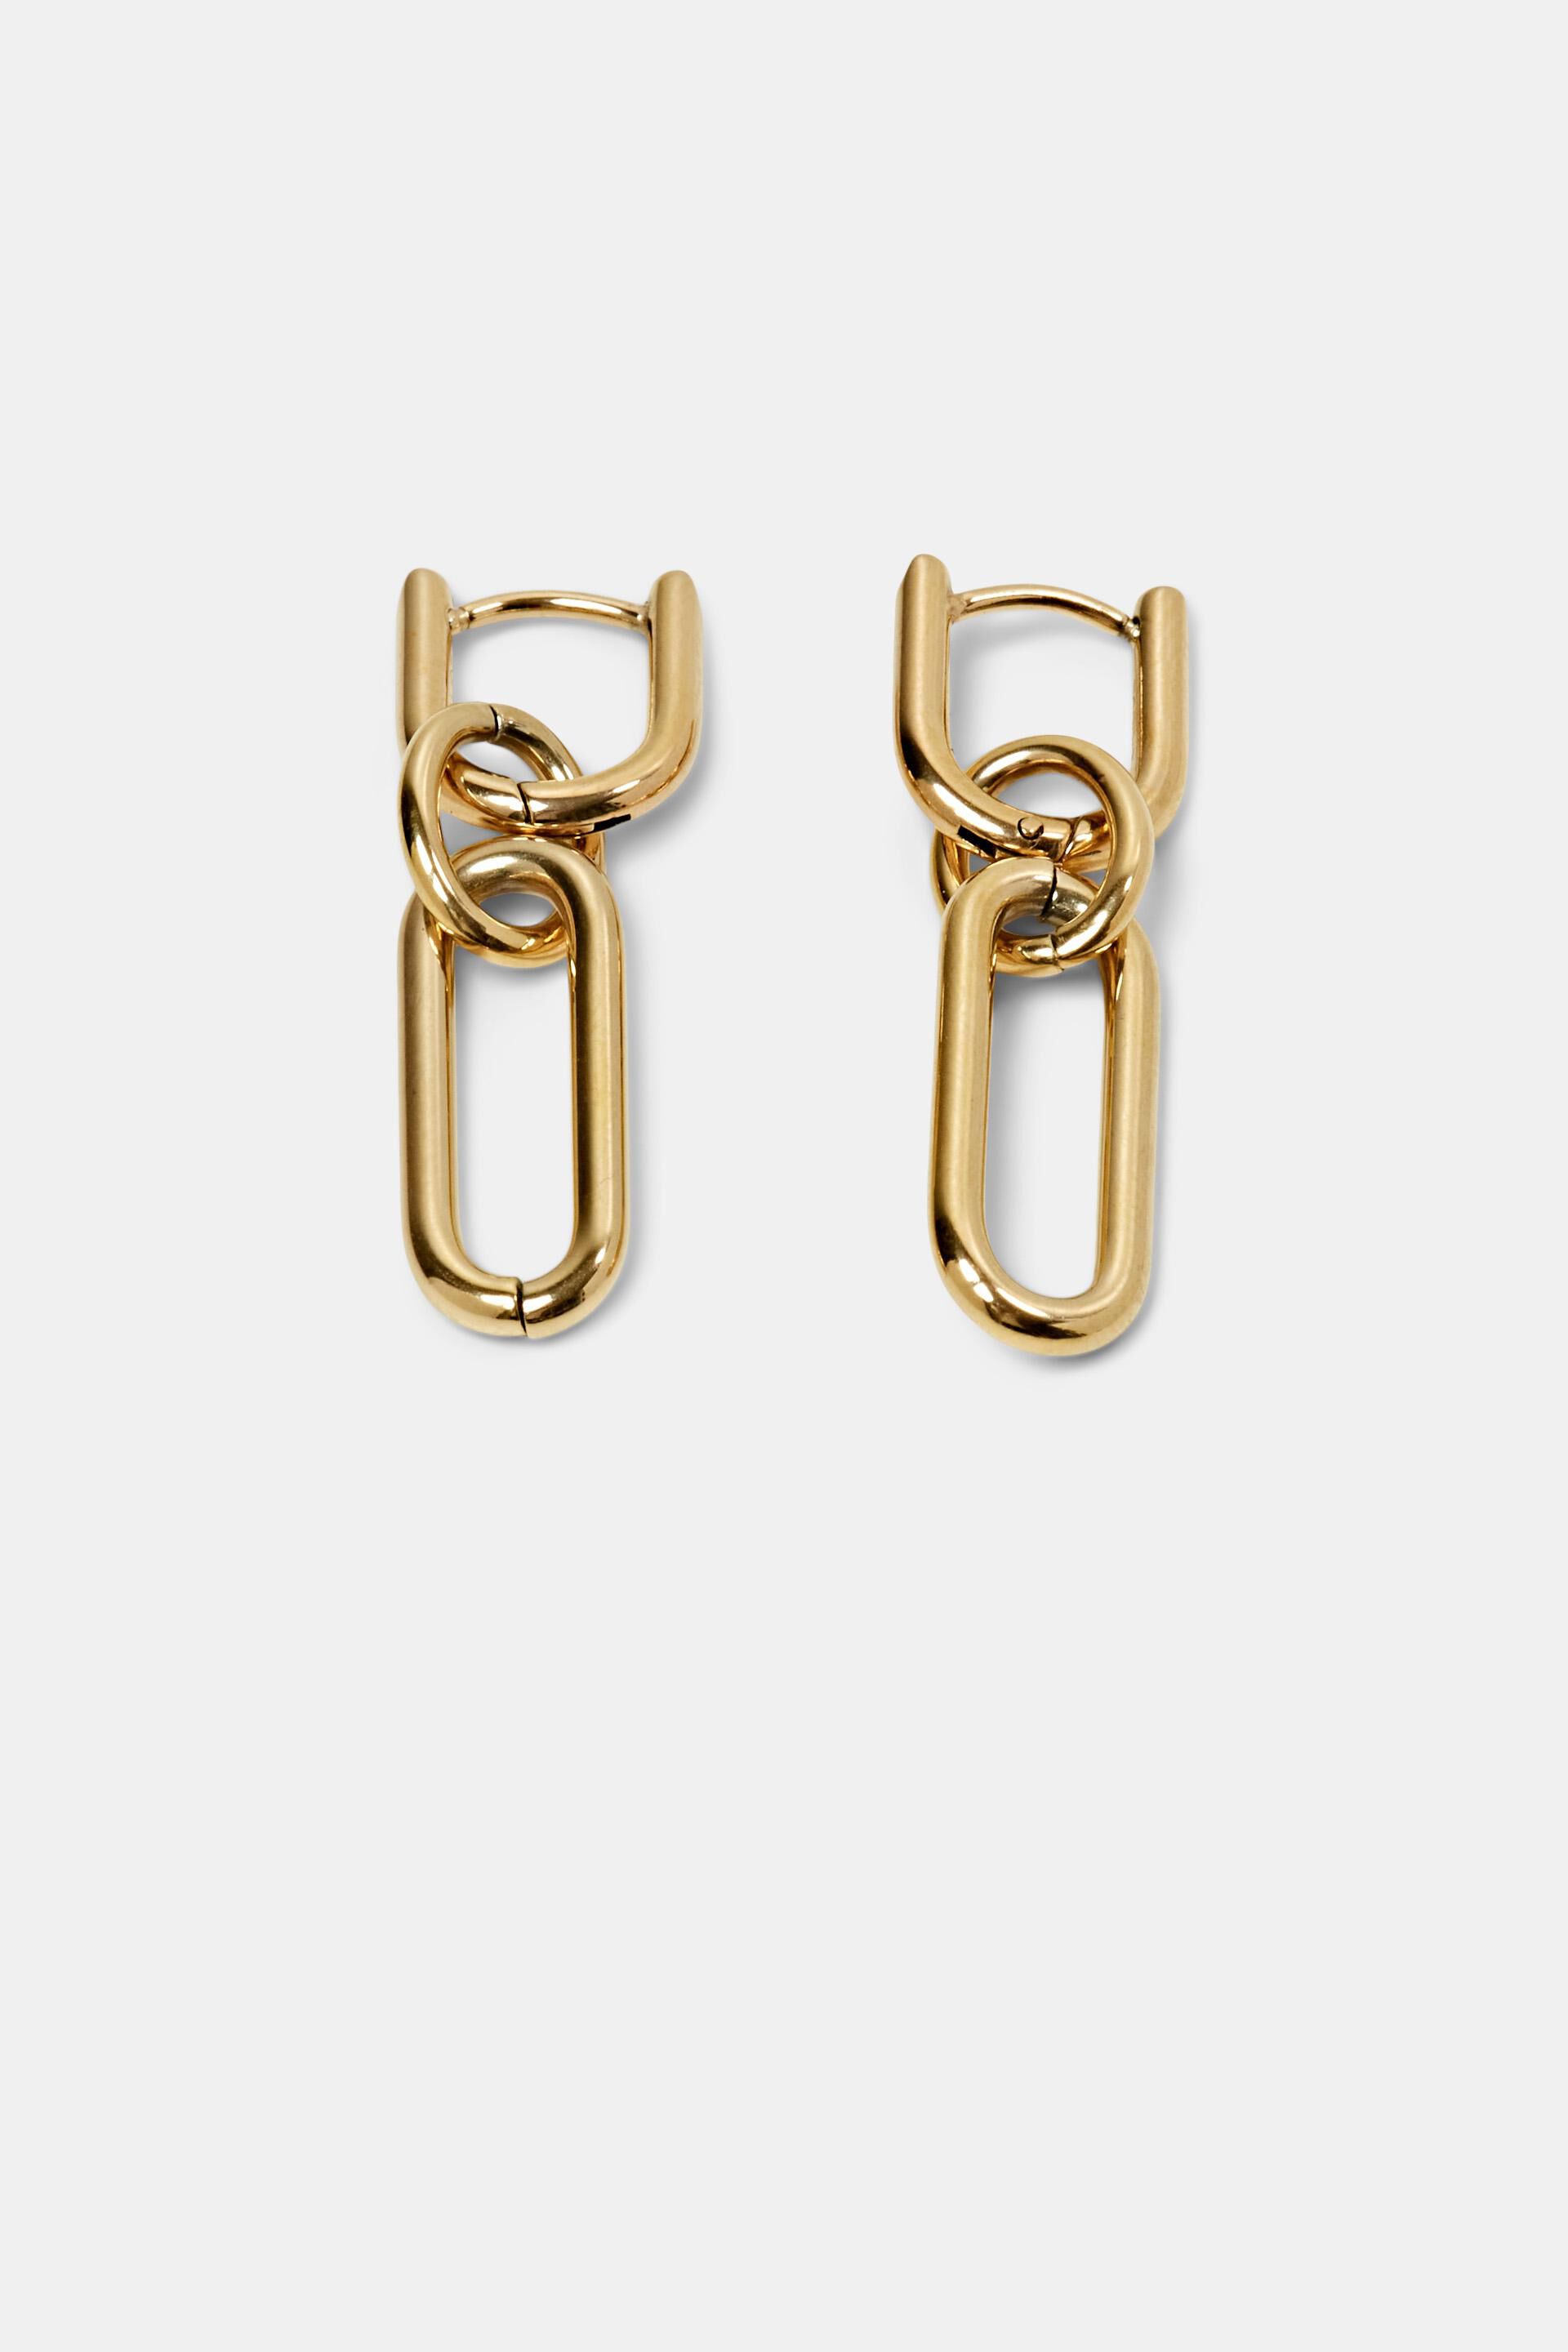 Esprit stainless Link earrings, steel